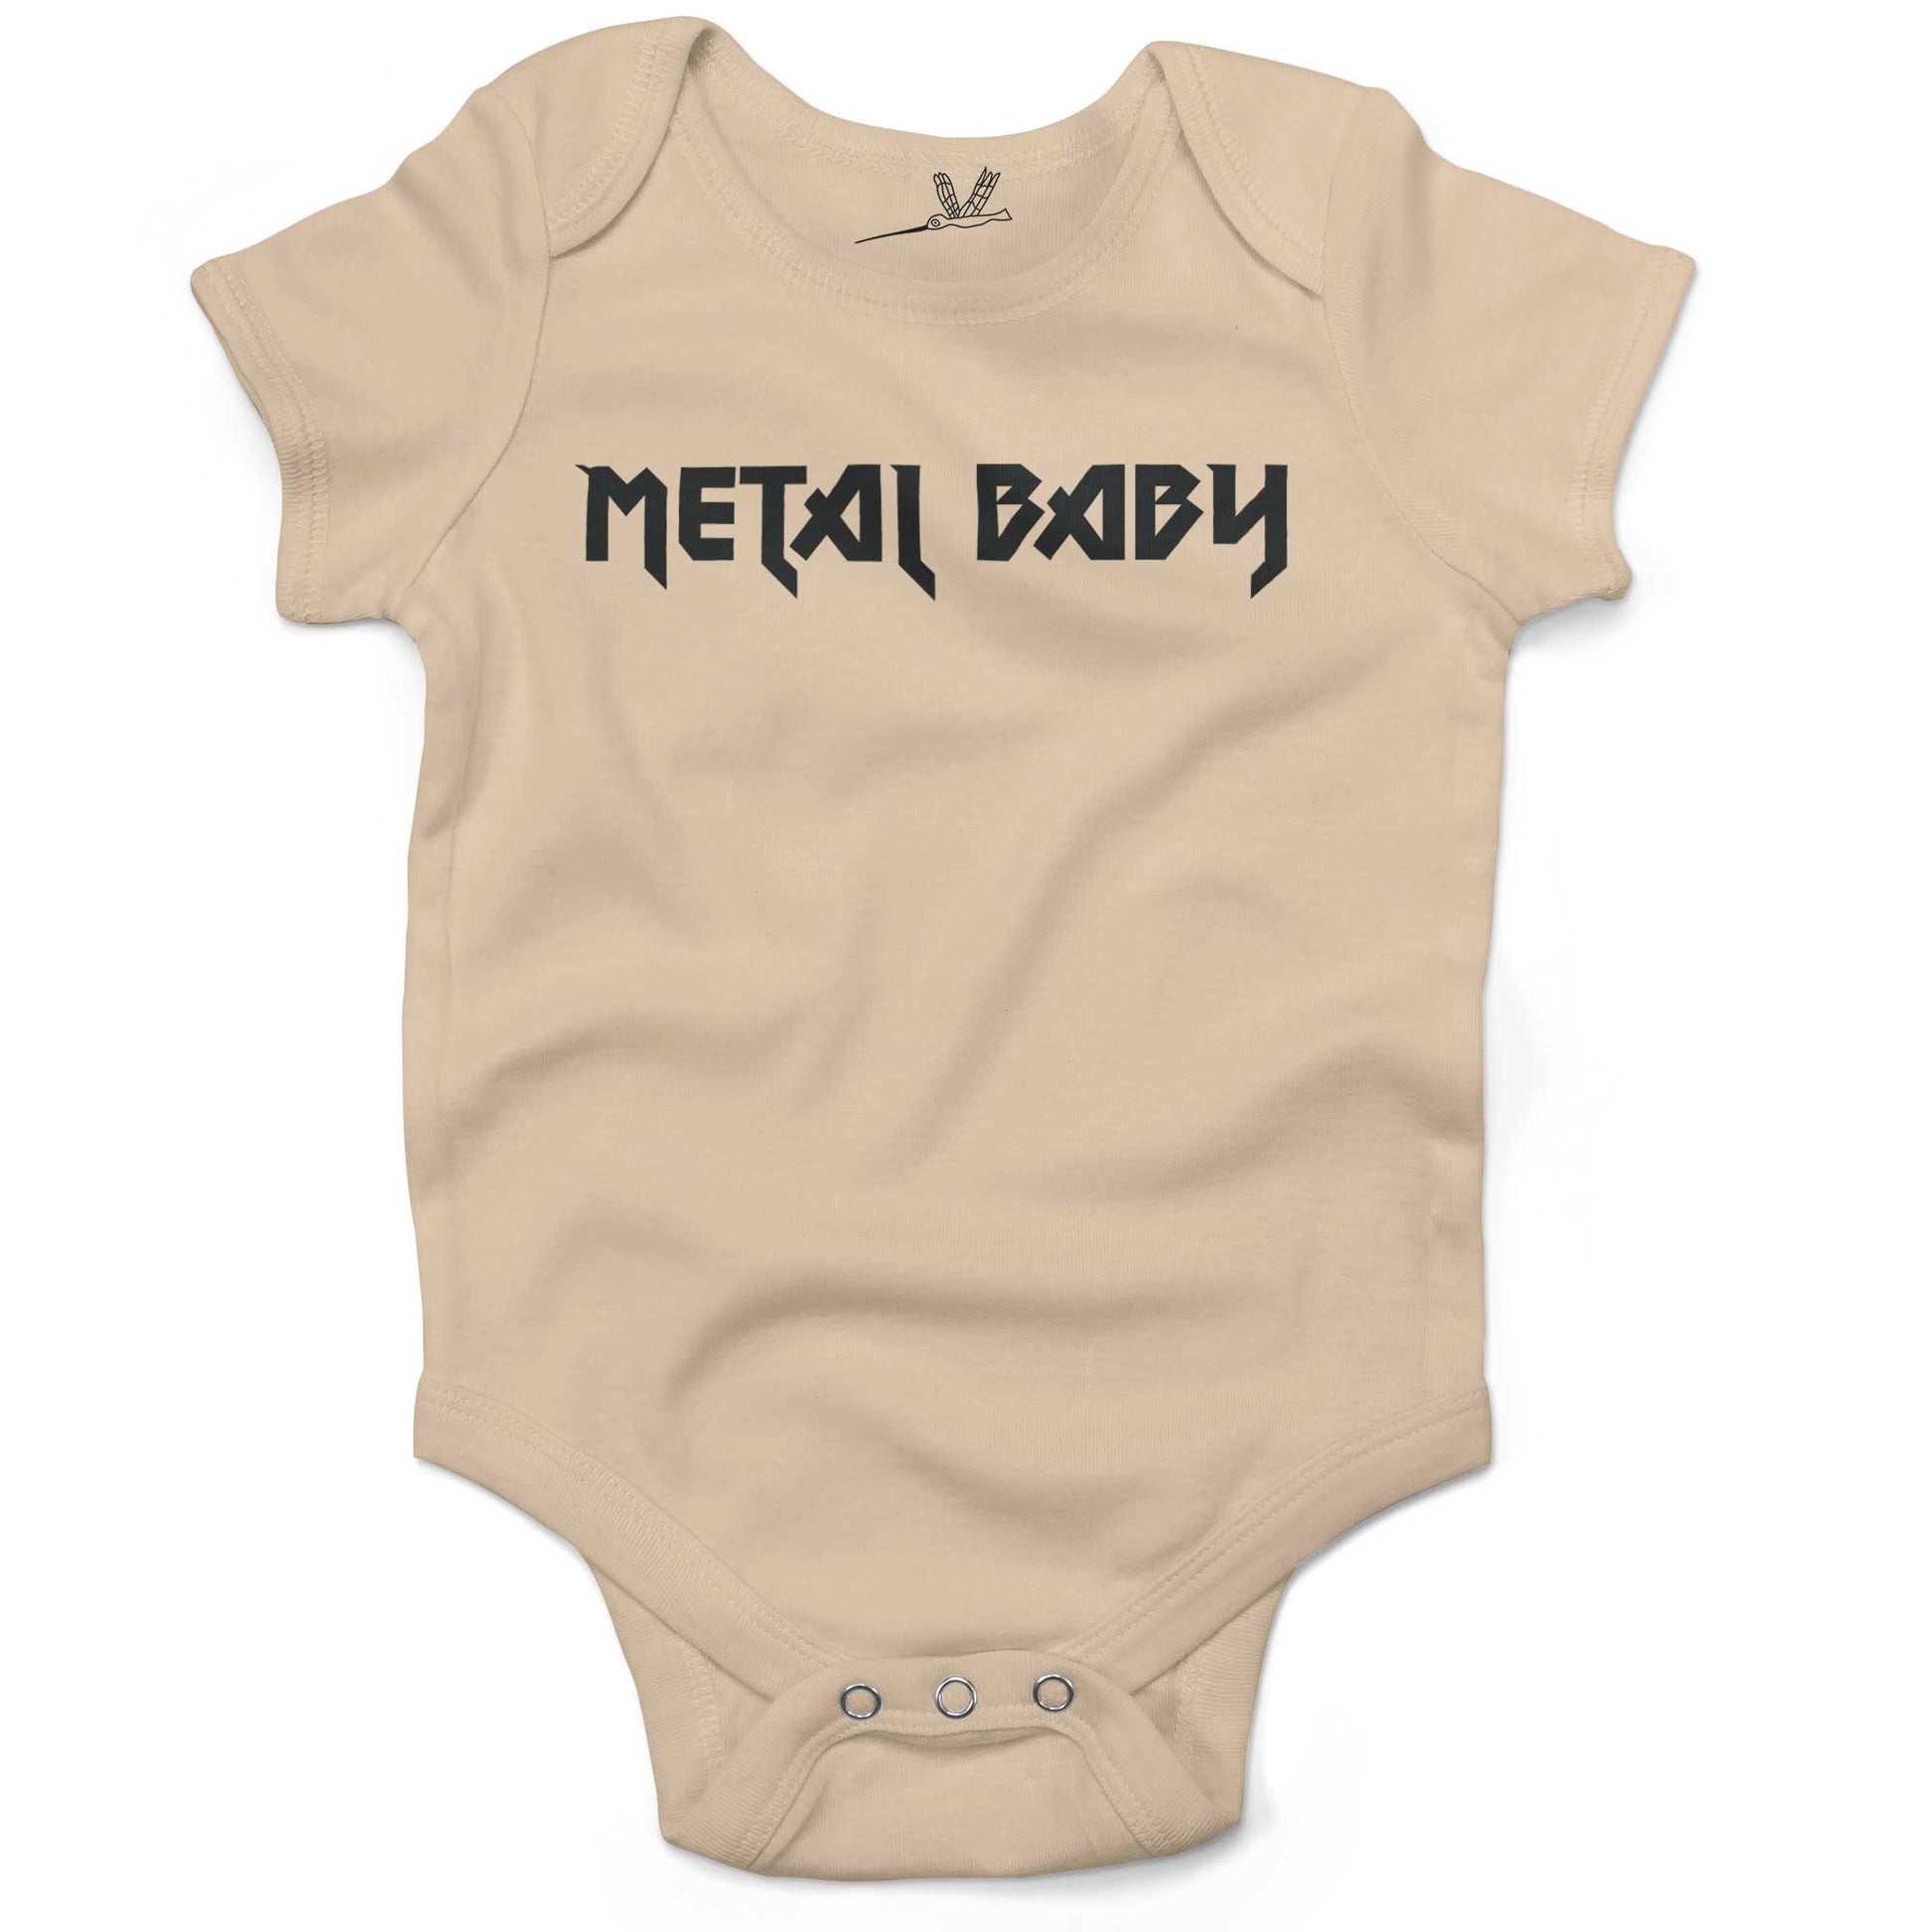 Metal Baby Infant Bodysuit or Raglan Baby Tee-Organic Natural-3-6 months